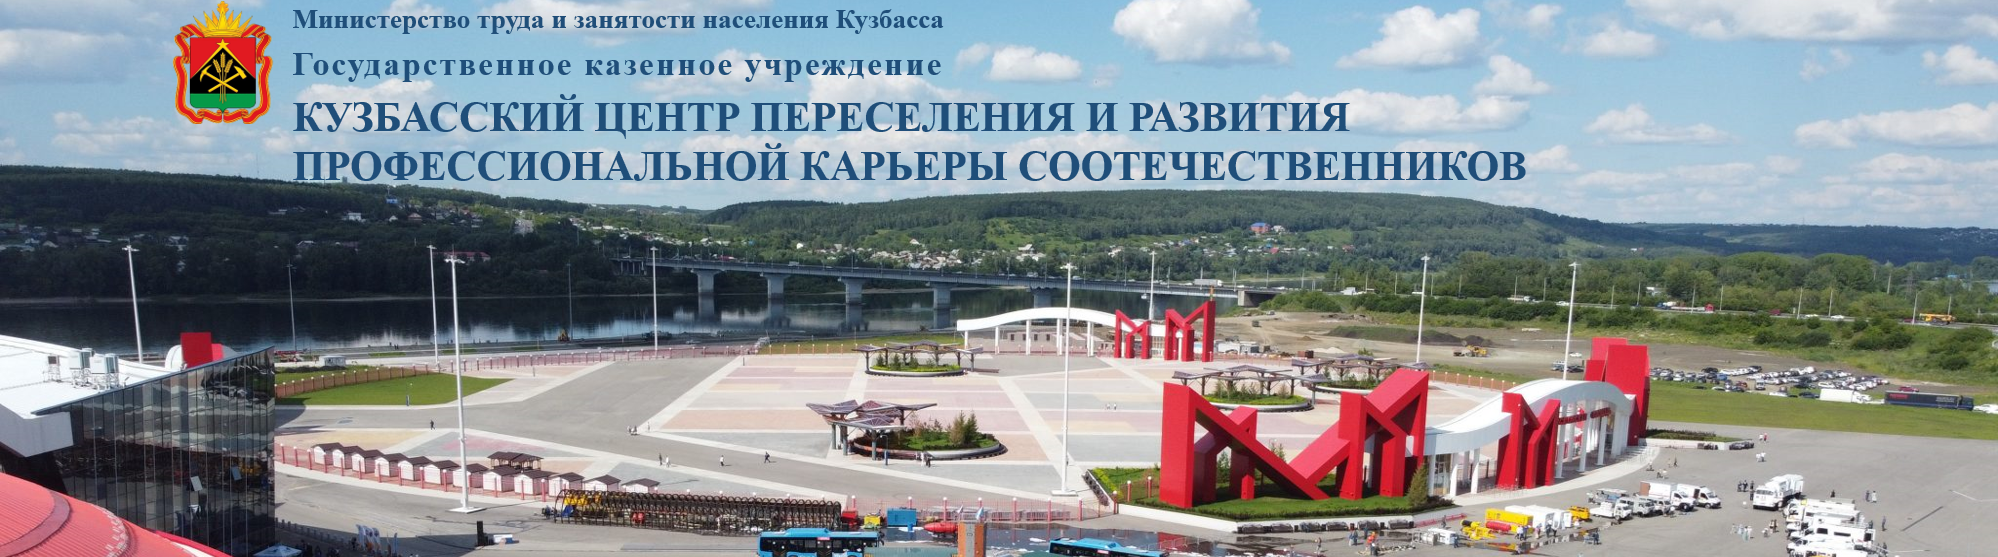 Кузбасский центр переселения и развития профессиональной карьеры соотечественников